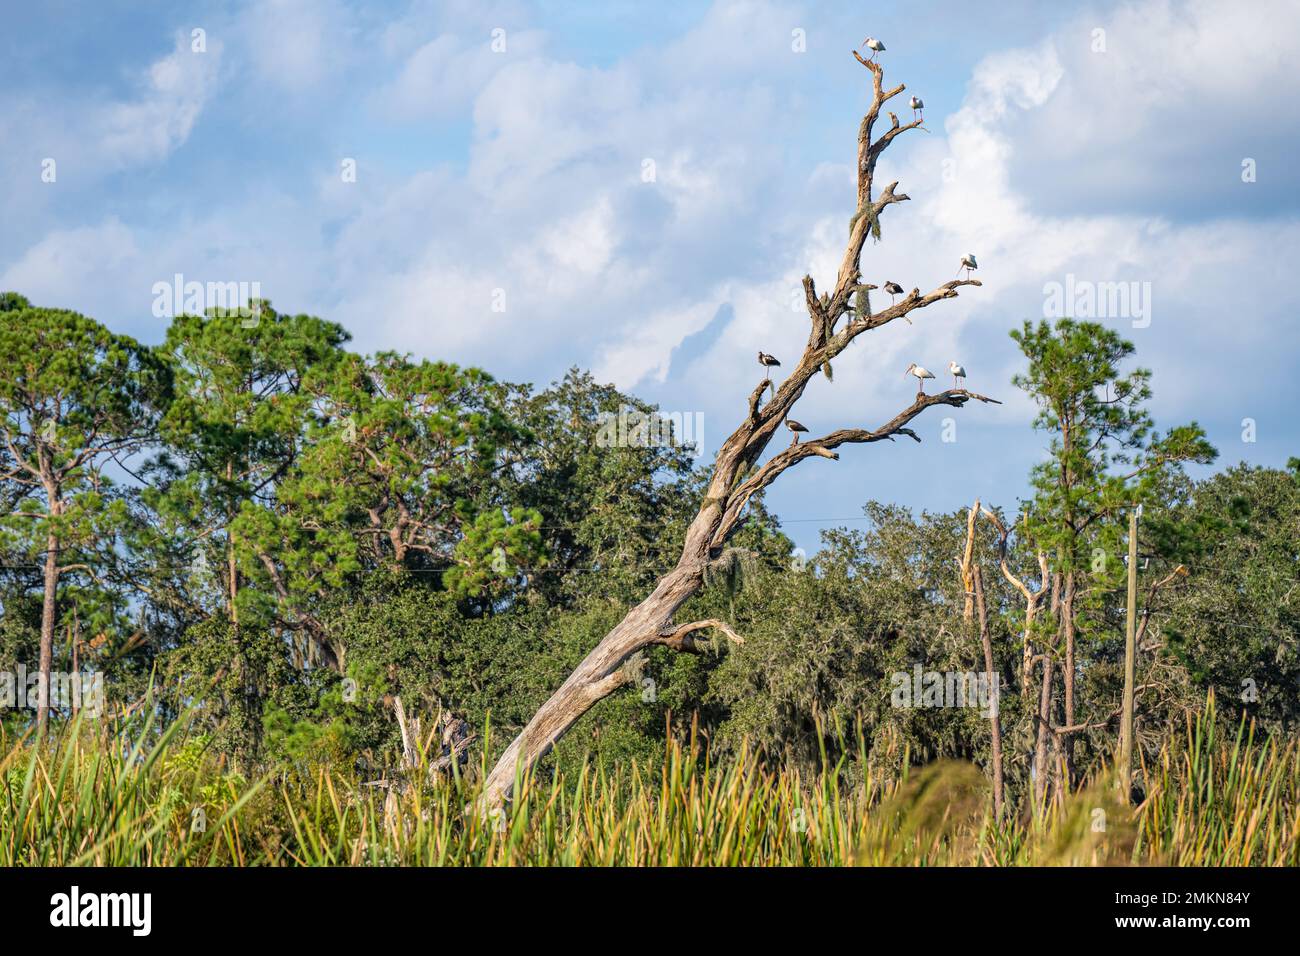 Erwachsene und Jugendliche amerikanische weiße Ibisen (Eudocimus albus) versammeln sich auf einem toten Baum in der Nähe der Zitrushaine im Showcase of Citrus in Clermont, Florida. Stockfoto